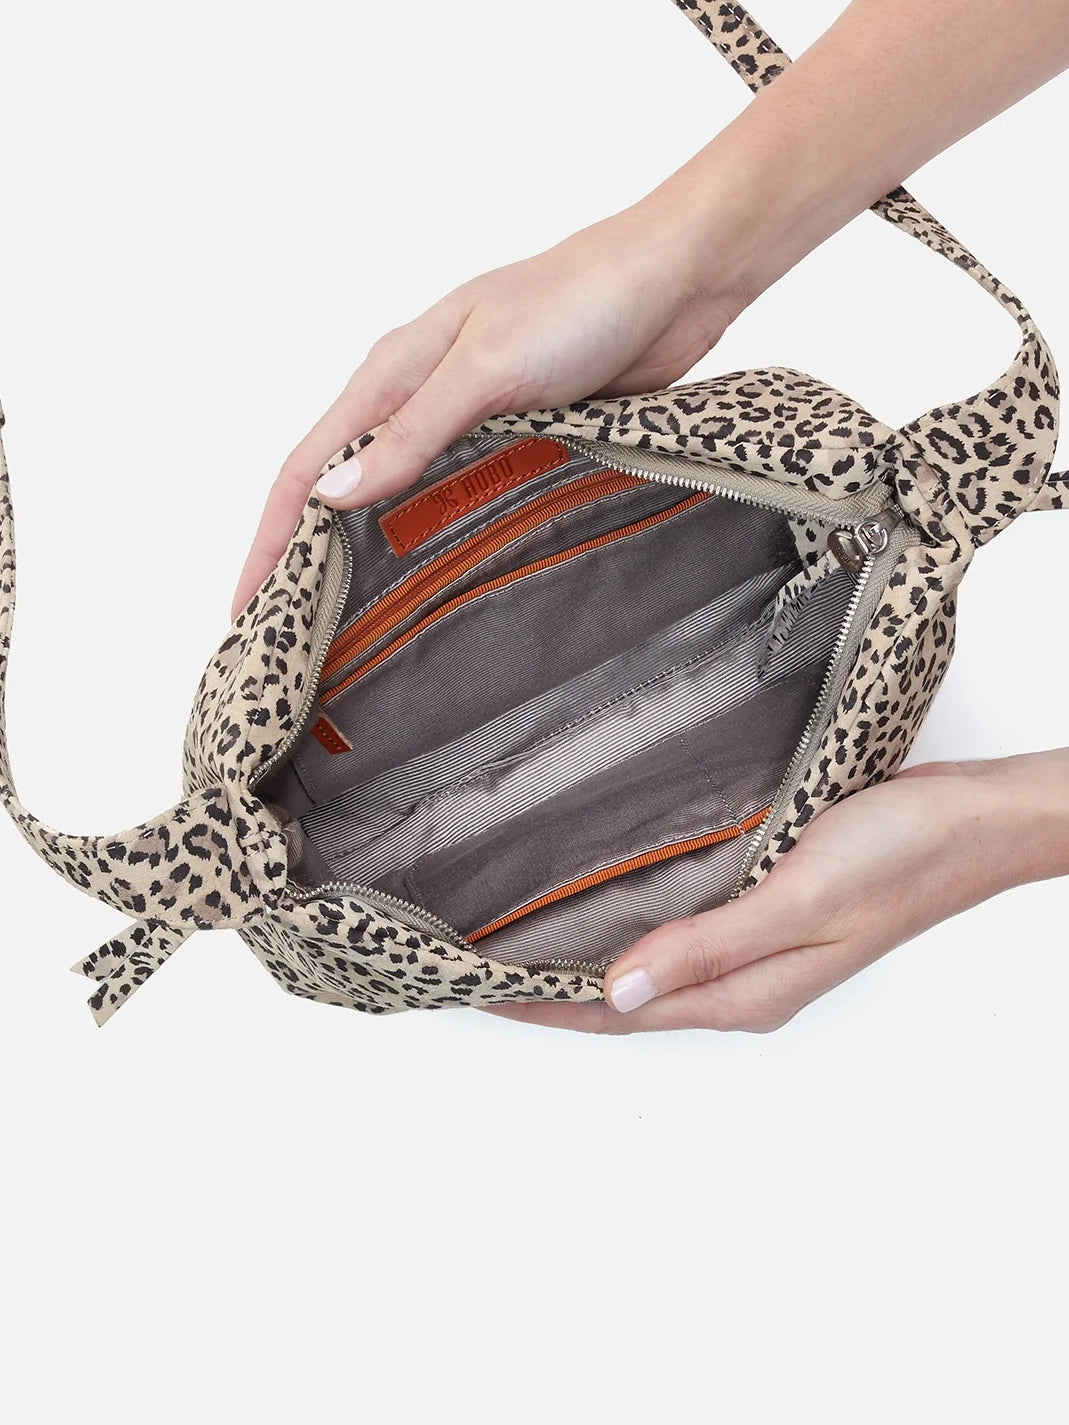 hobo bonita crossbody bag in mini leopard printed leather